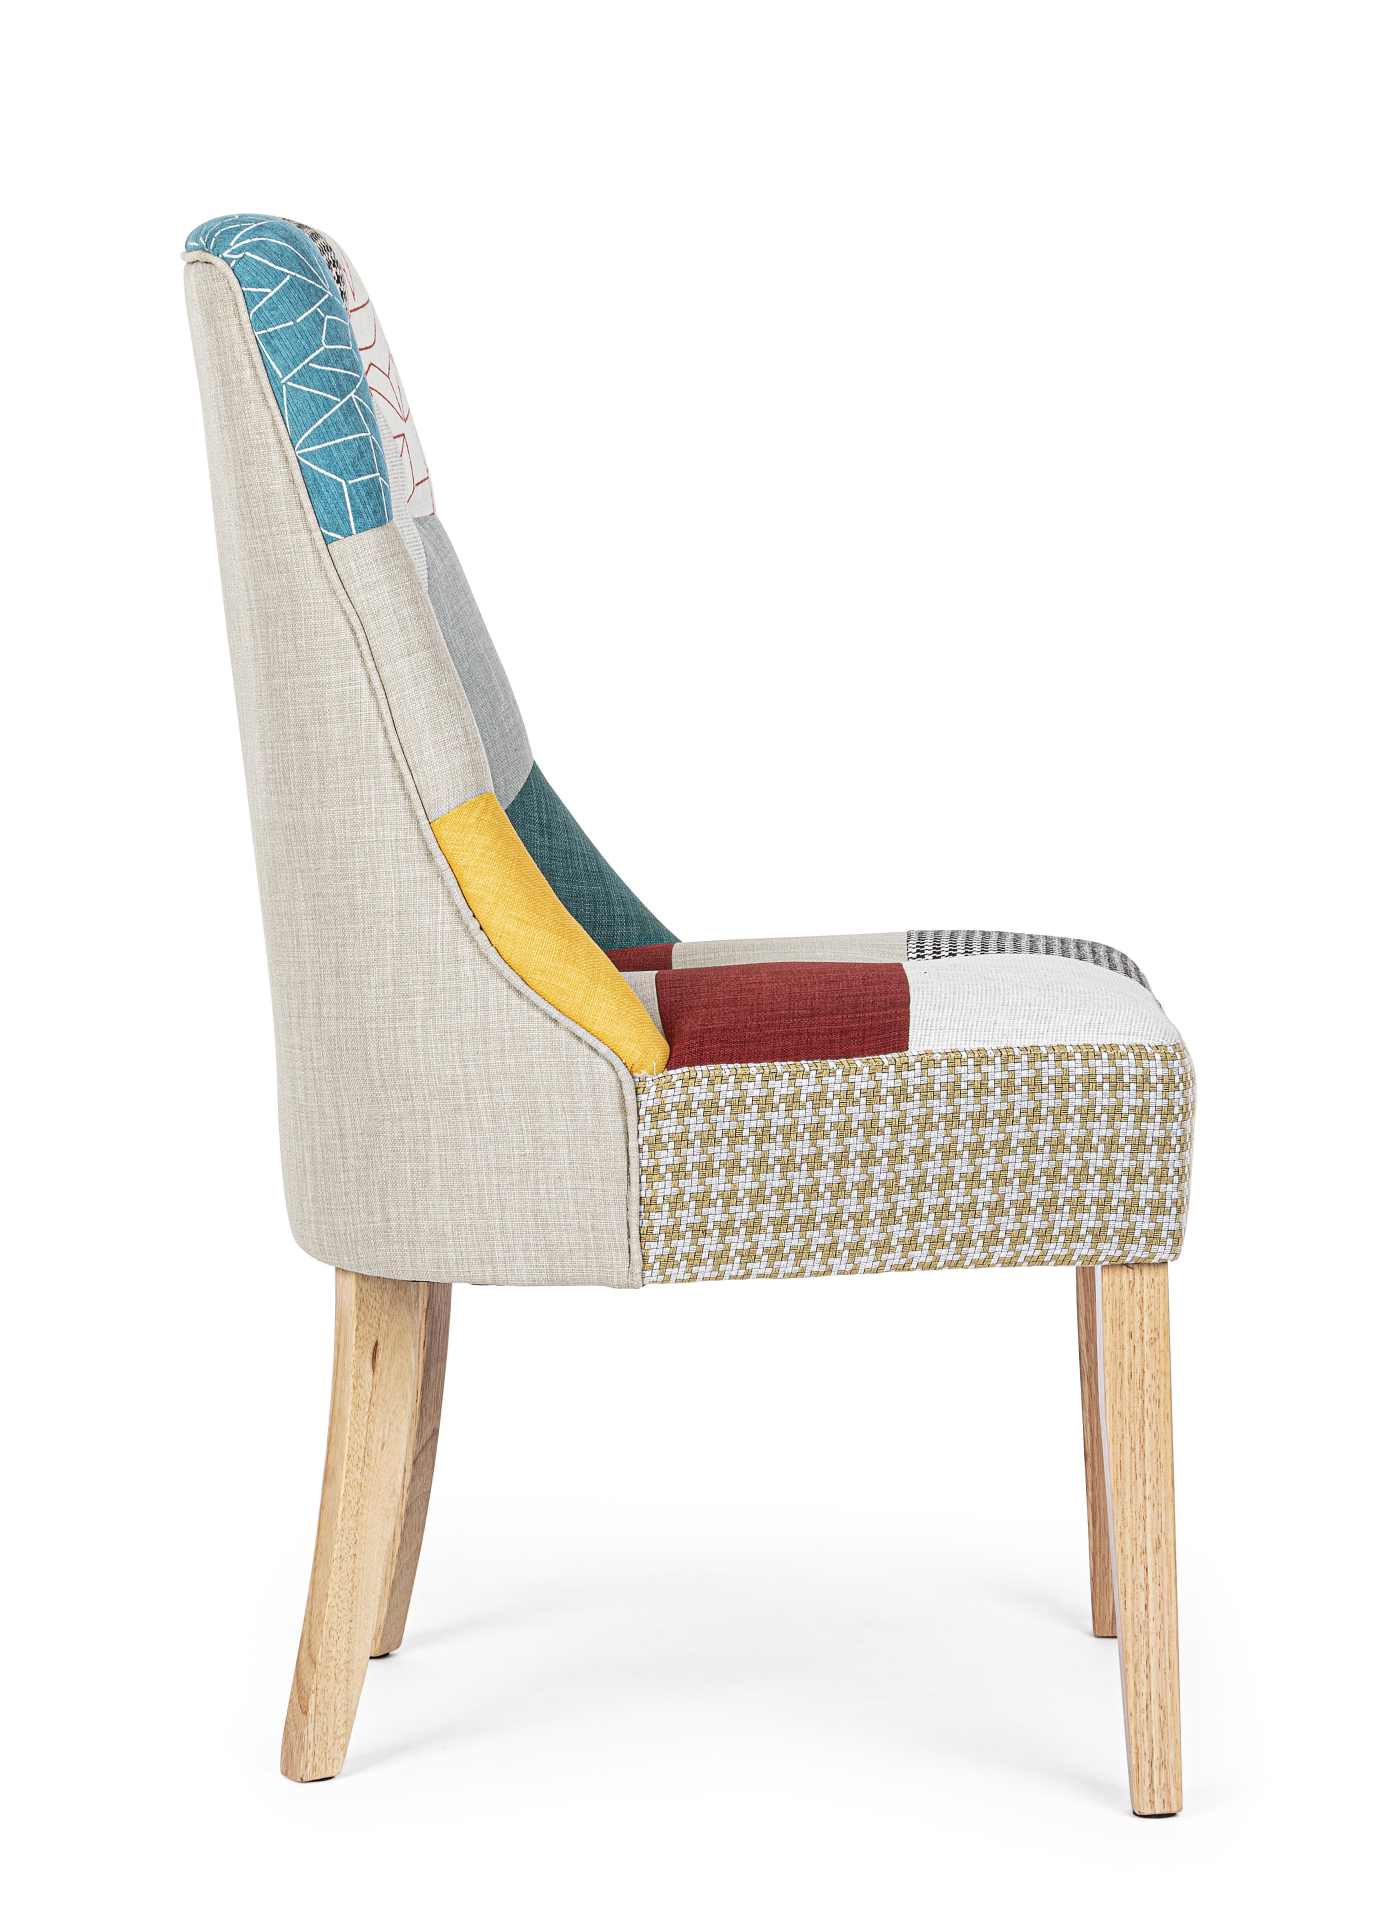 Der Esszimmerstuhl Galatea überzeugt mit seinem klassischem Design. Gefertigt wurde der Stuhl aus einem Stoff-Bezug, welcher mehrfarbig ist. Das Gestell ist aus Holz und ist natürlich gehalten. Die Sitzhöhe beträgt 47 cm.